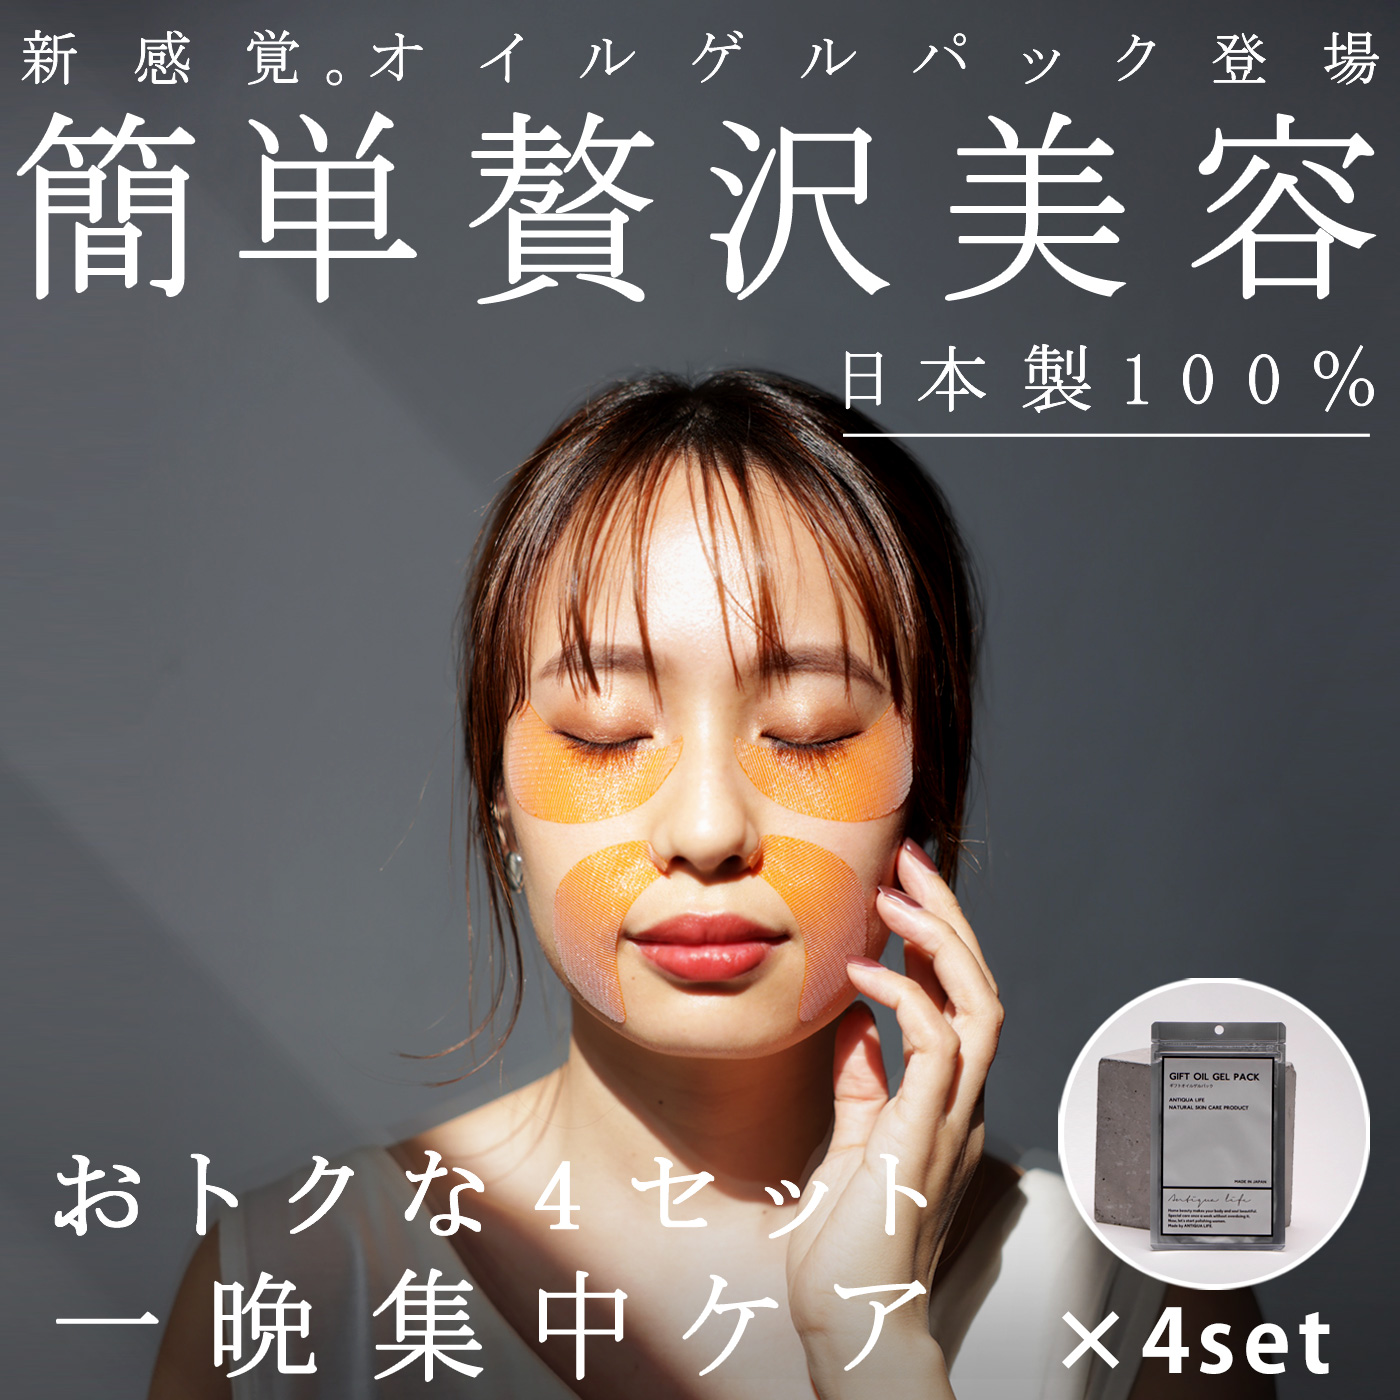 新感覚 オイルゲルパック 日本製 簡単 贅沢美容 4個セット 送料無料・再販。(50)メール便可 母の日